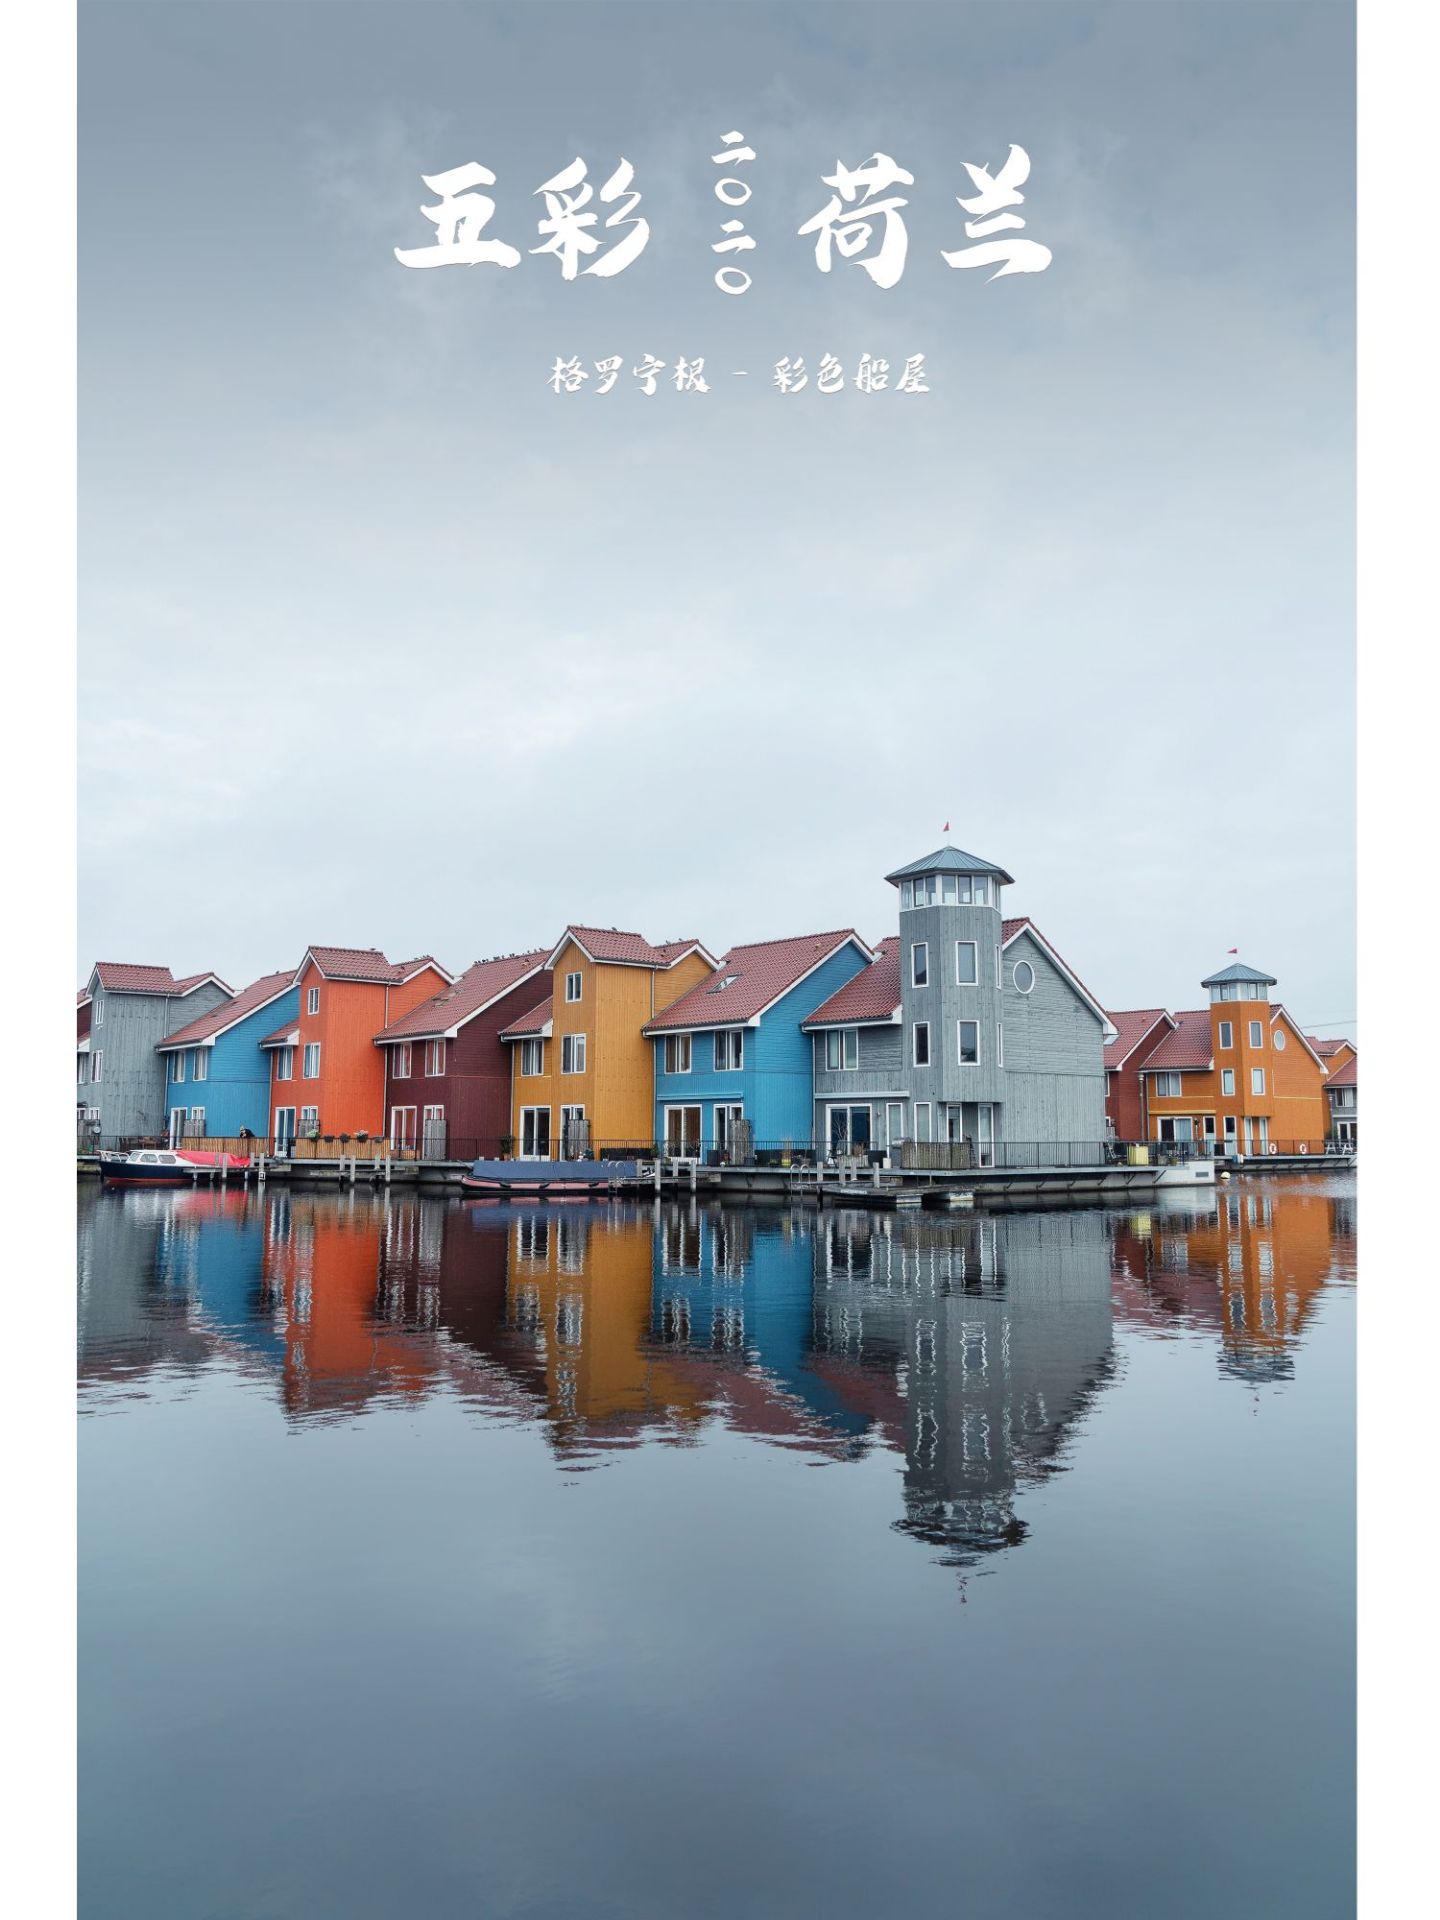 🔥 #荷兰旅游#打卡隐秘的五彩船屋   ㊙️ 荷兰总是能带给我惊喜，在东北部城市格罗宁根就隐藏着一片